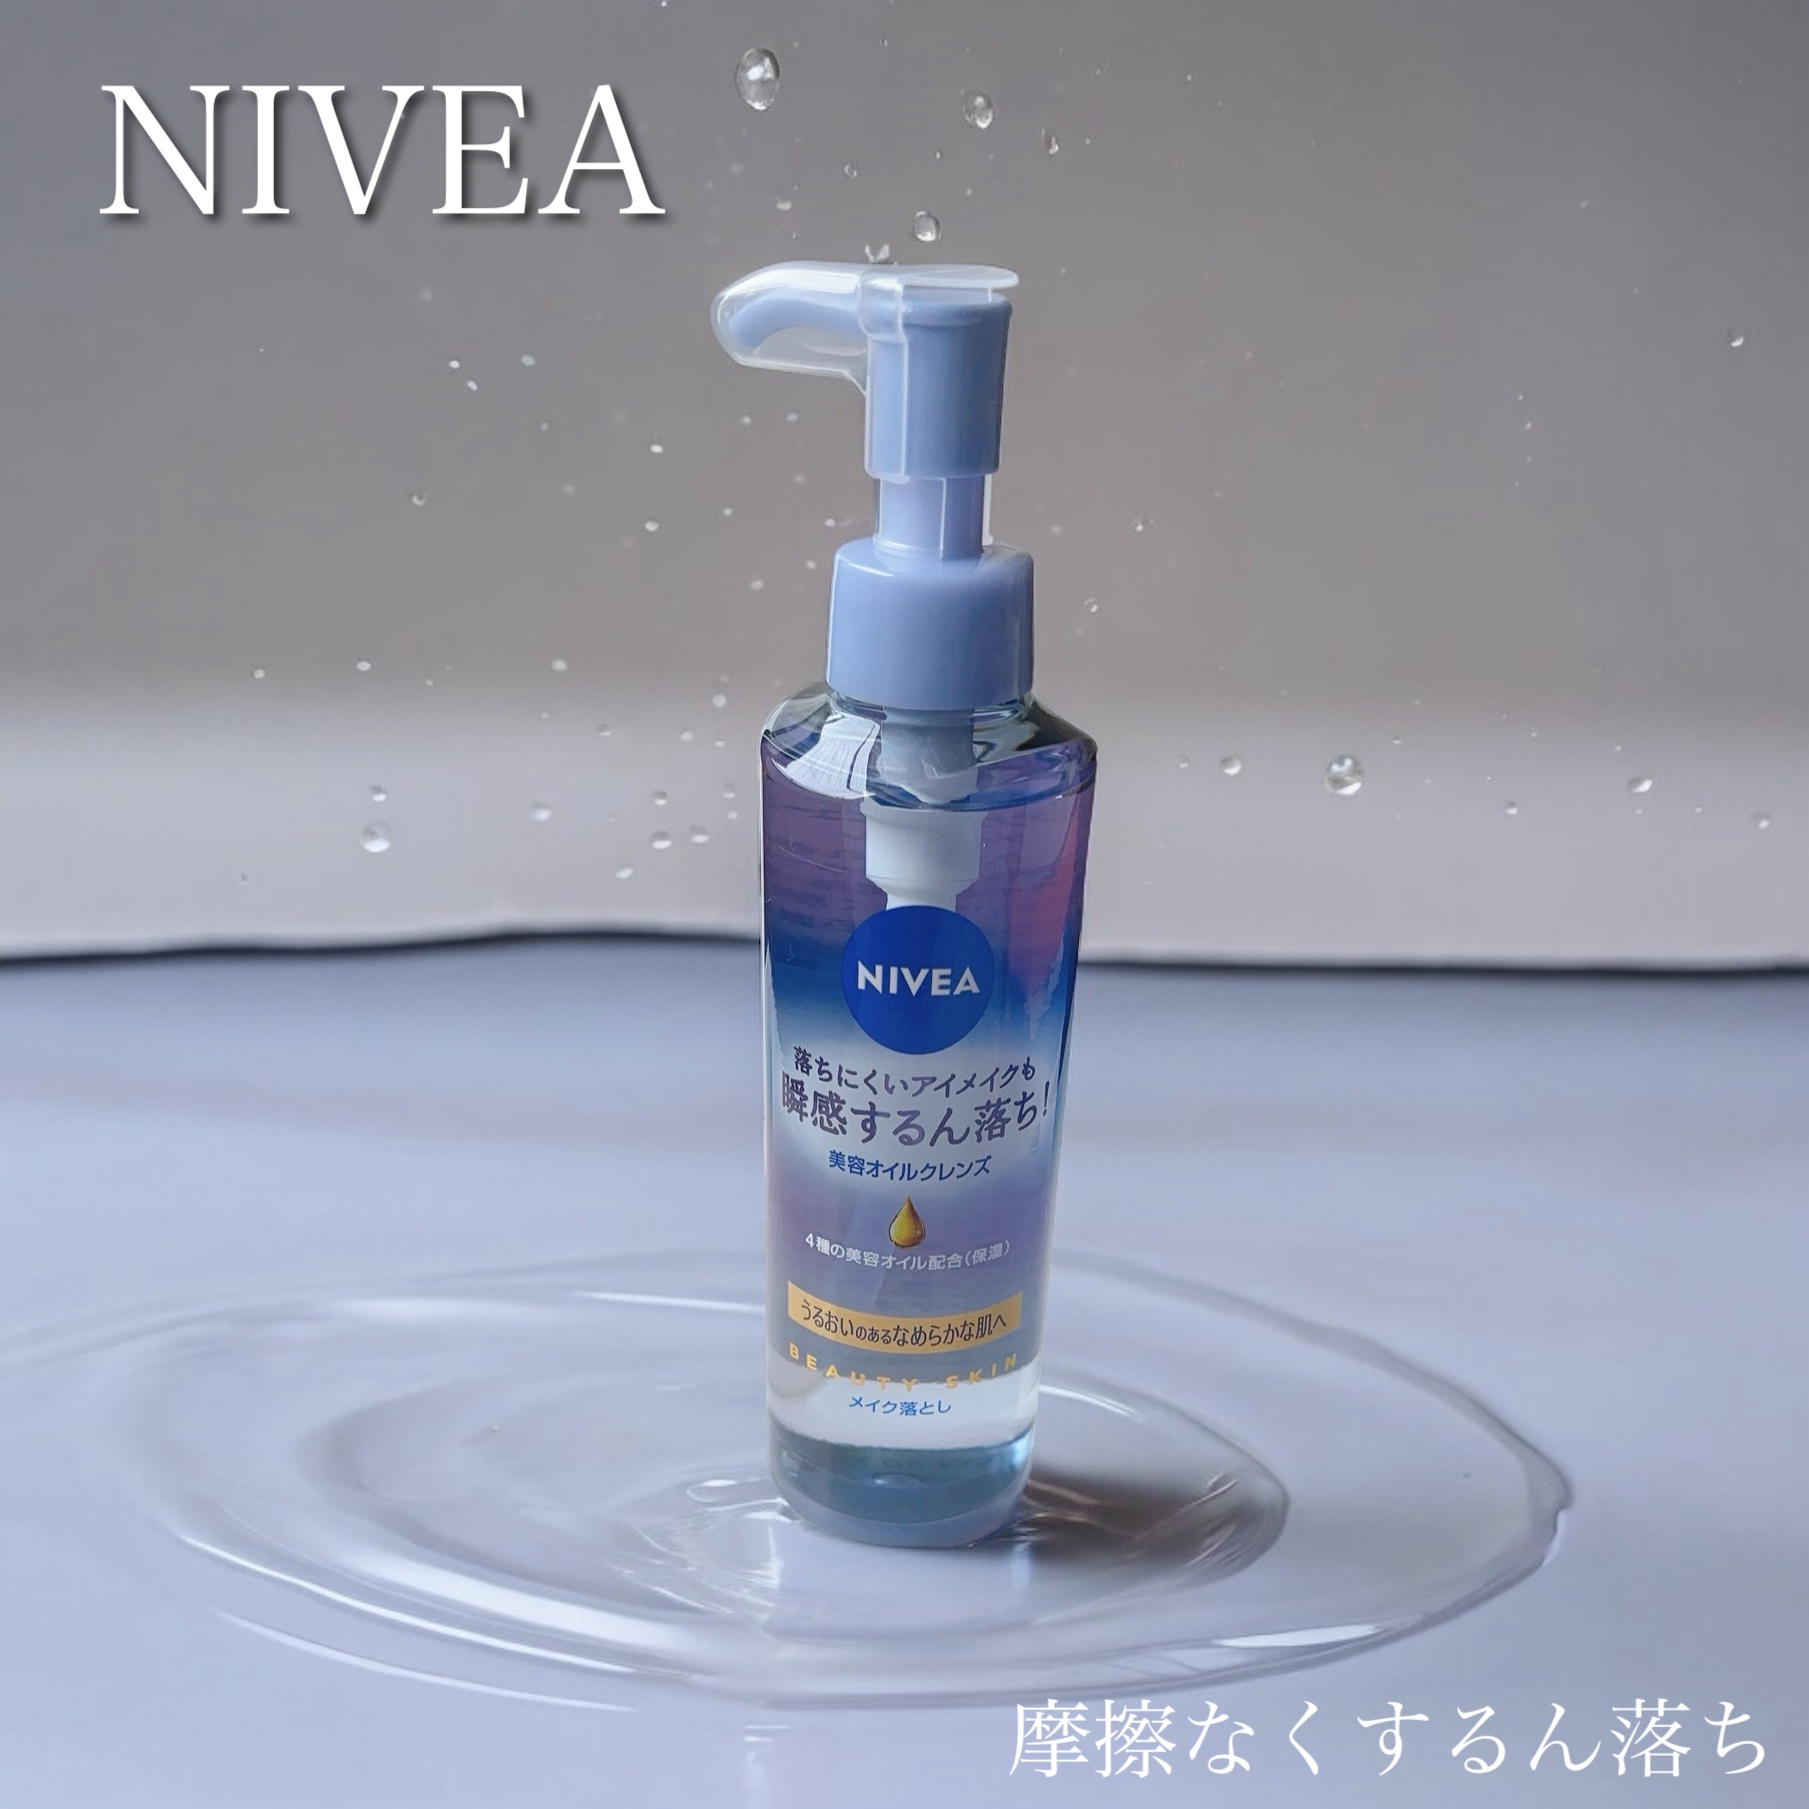 NIVEA(ニベア) クレンジングオイル ビューティースキンの良い点・メリットに関するふっきーさんの口コミ画像1